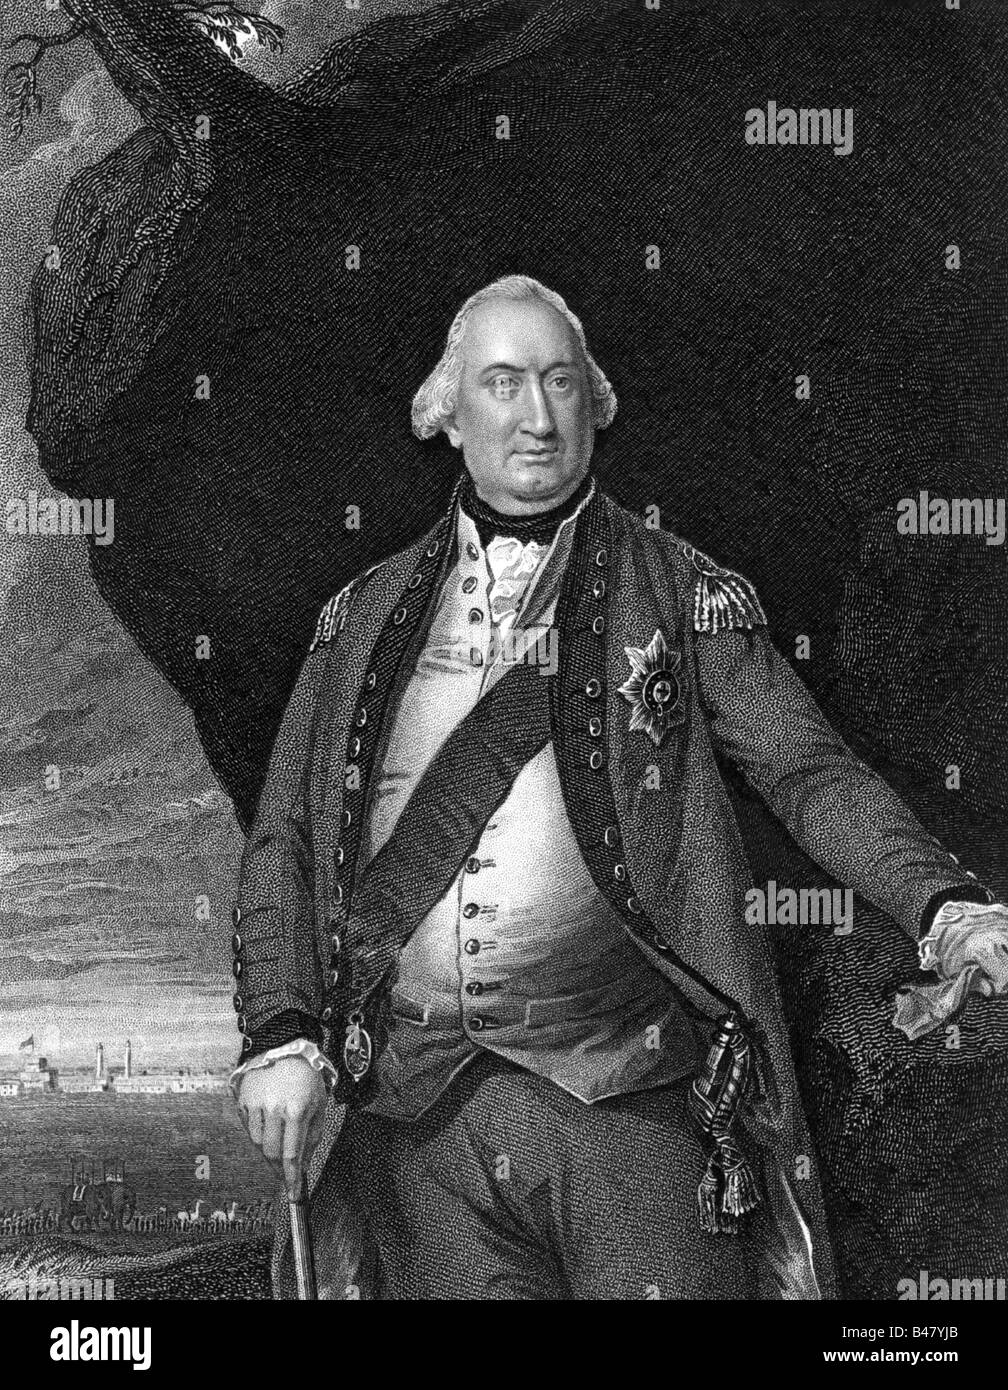 Cornwallis, Charles, 1er Marquis, 31.12.1738 - 5.10.1805, général et homme politique britannique, demi-longueur, gravure sur acier Par William Holl, début du xixe siècle, l'artiste a le droit d'auteur , de ne pas être effacé Banque D'Images